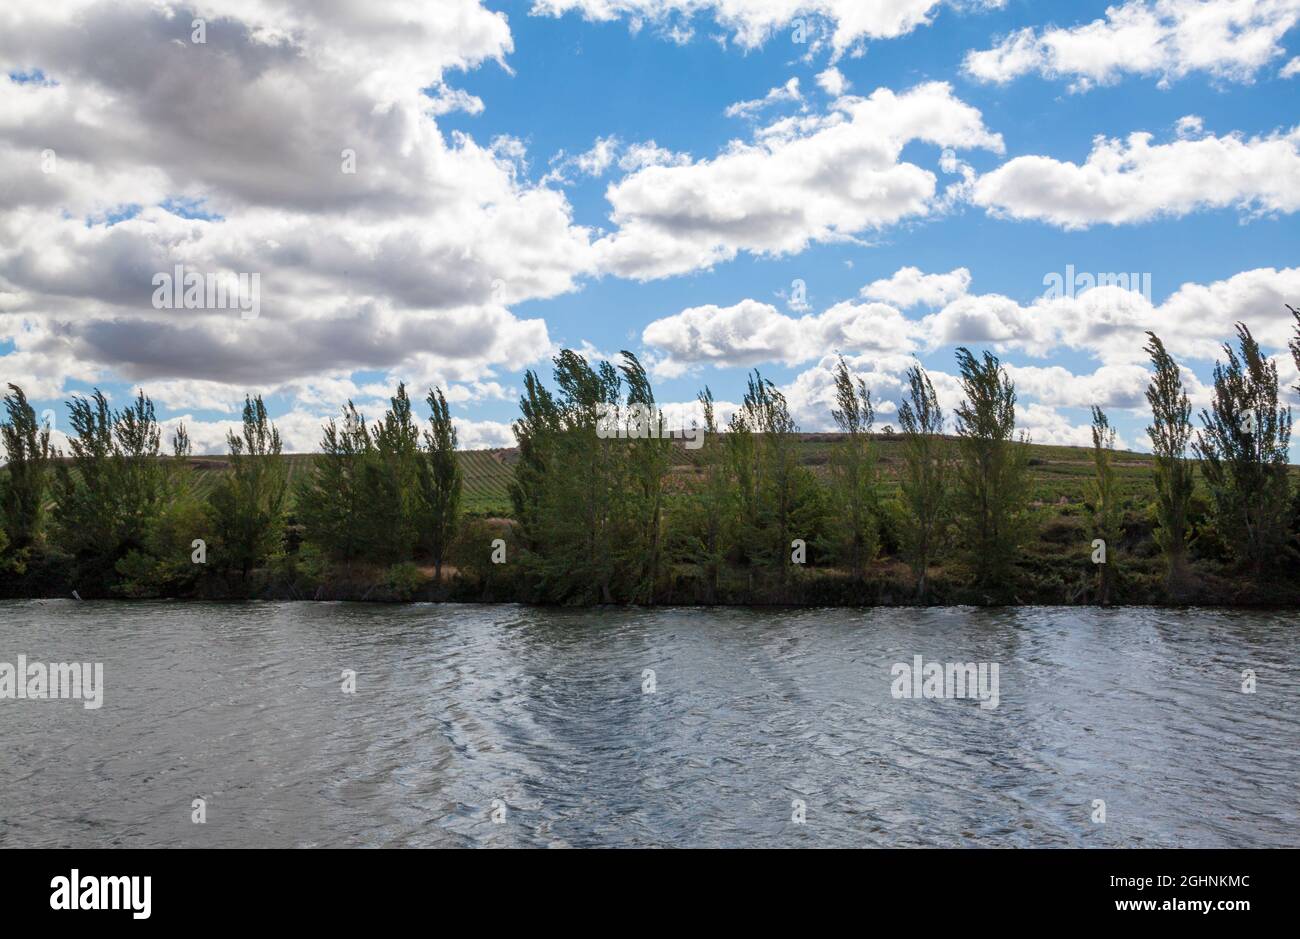 Landscape of the Ebro River in Briñas, La Rioja Stock Photo